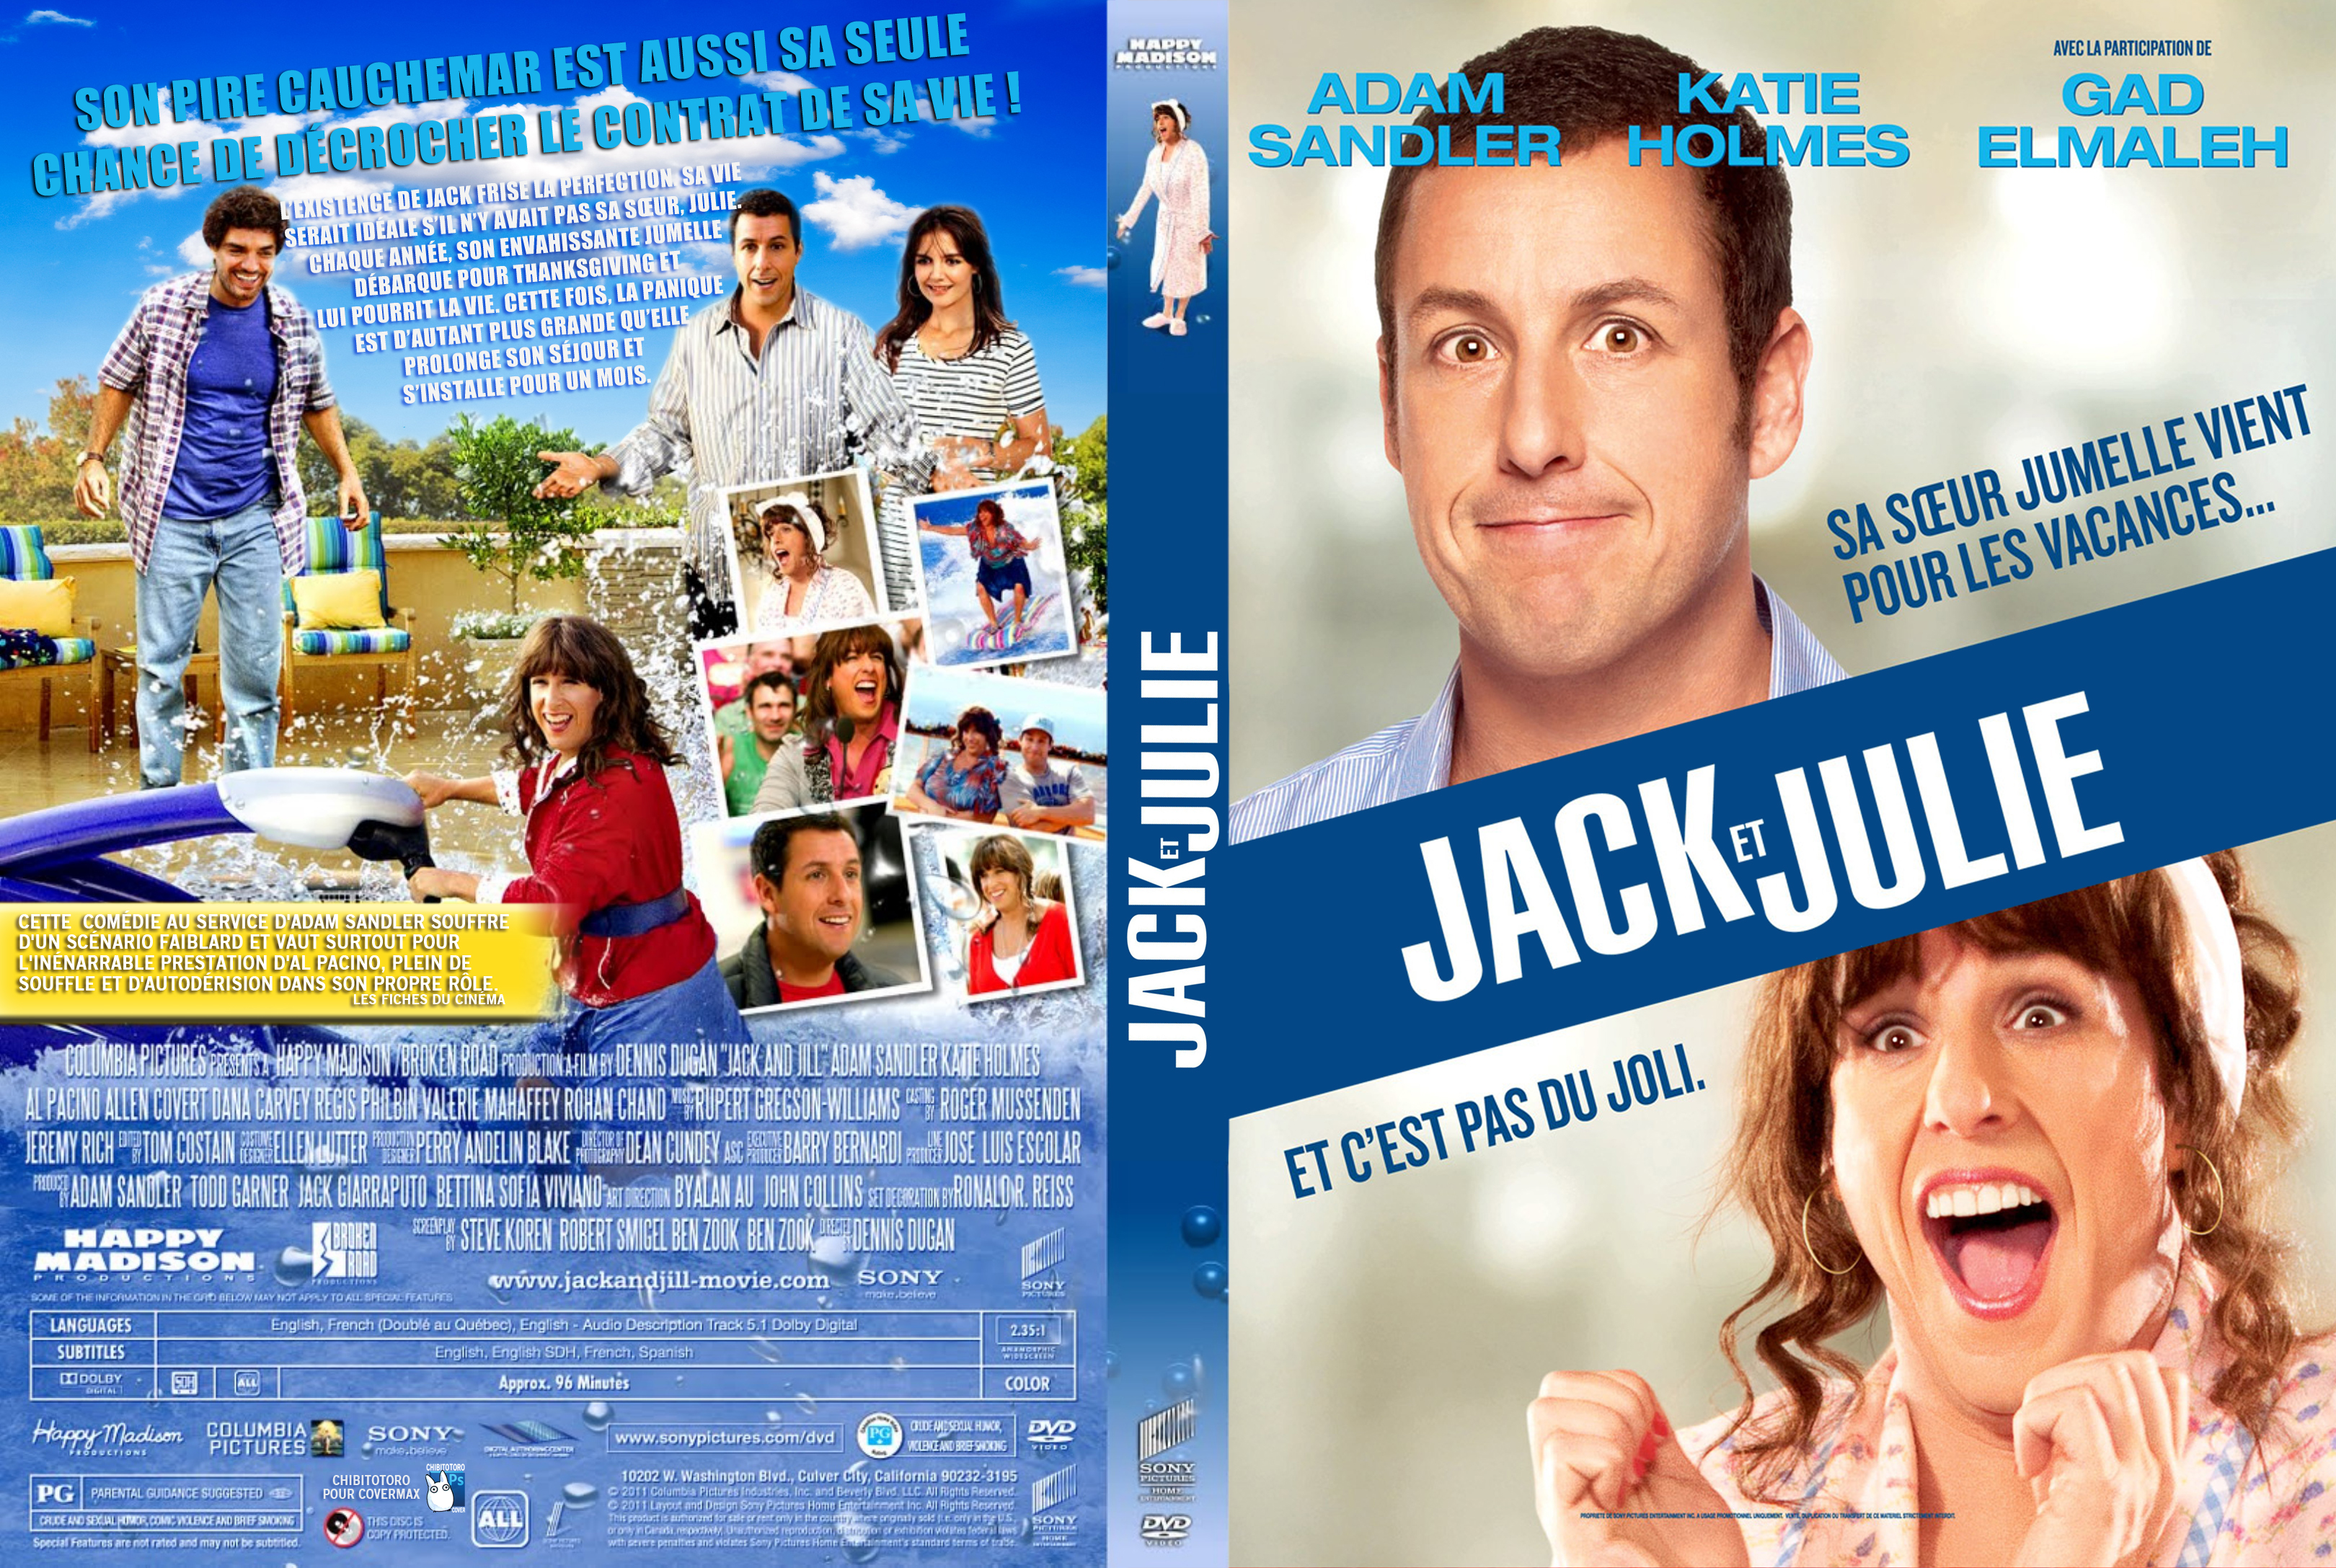 Jaquette DVD Jack et Julie custom v2